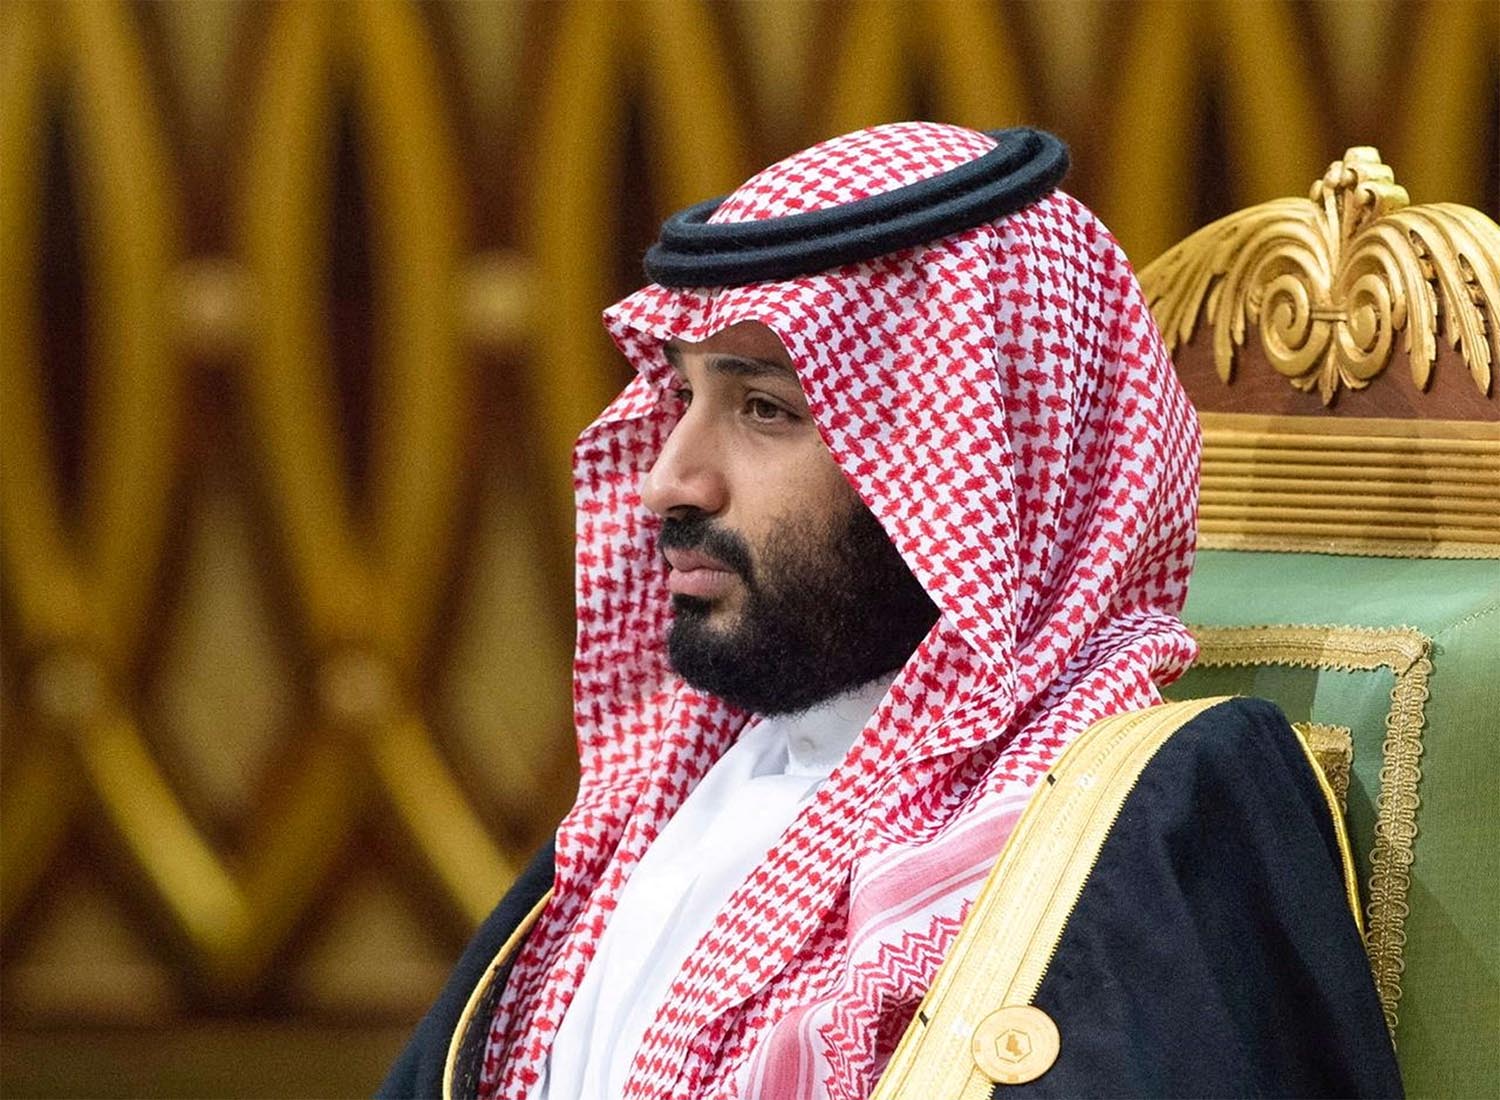 The 40th GCC summit is held in Riyadh